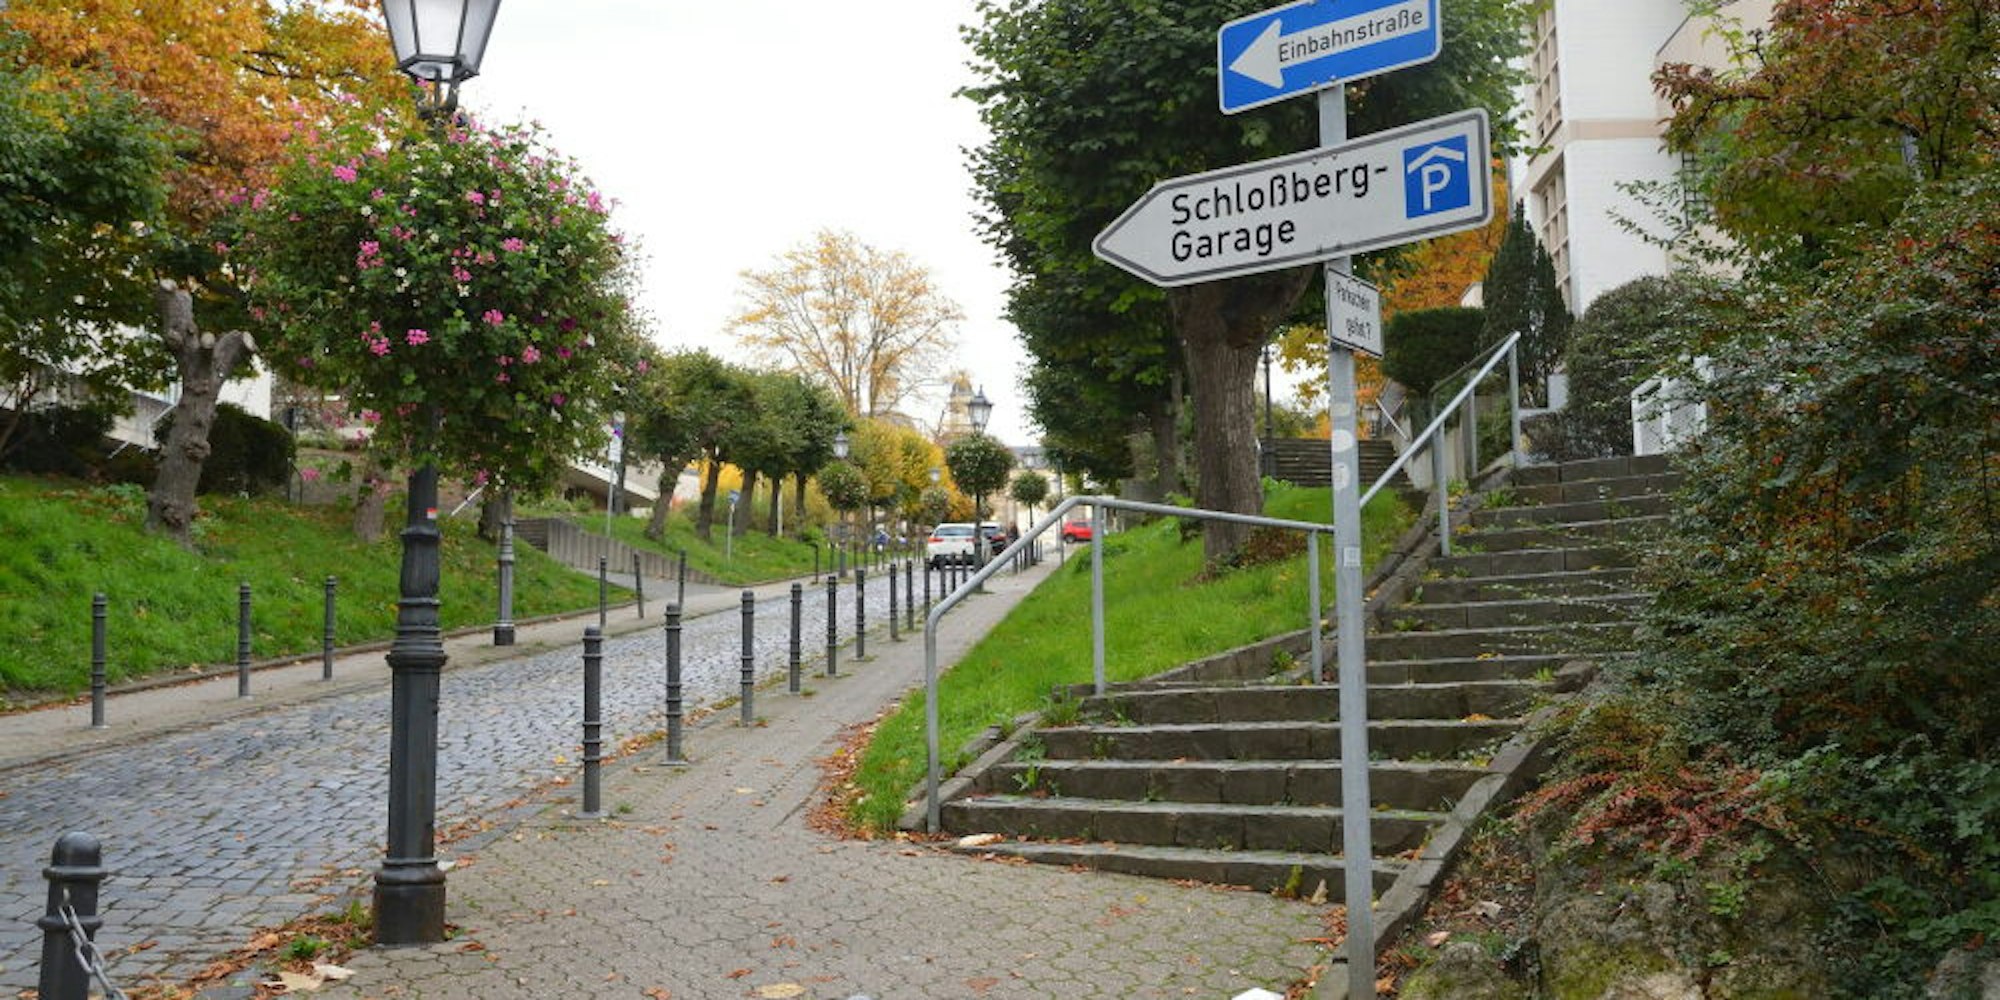 Die Schloßstraße mit Hinweis zur Schloßberg-Garage.